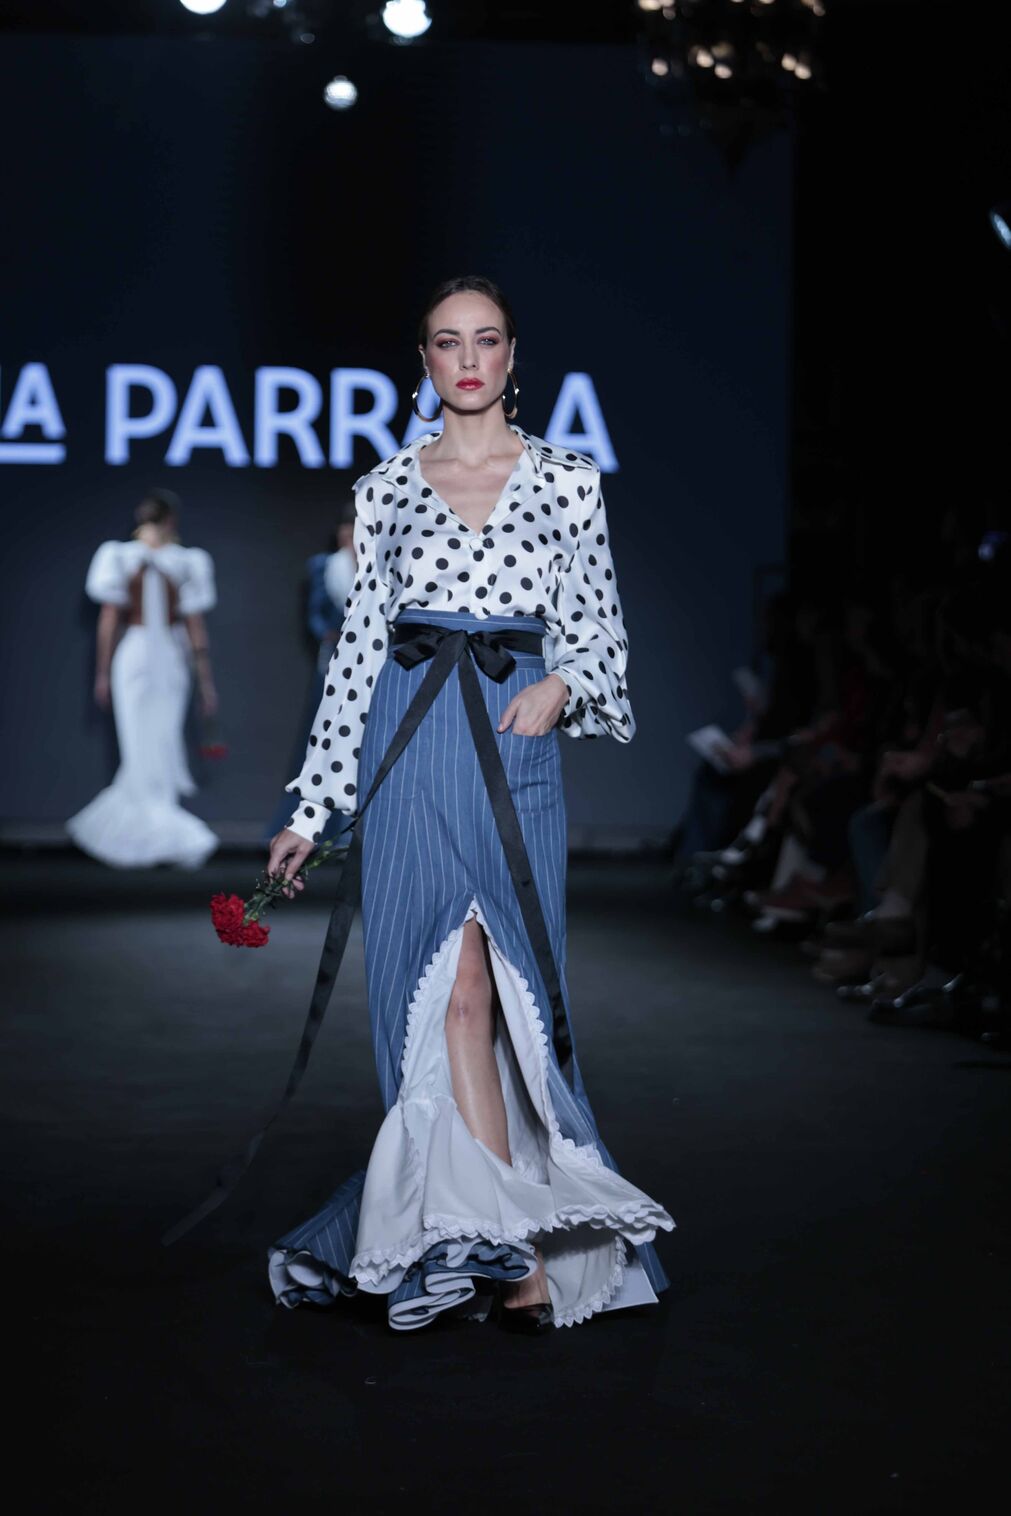 El desfile de La Parrala en We Love Flamenco 2024, todas las fotos